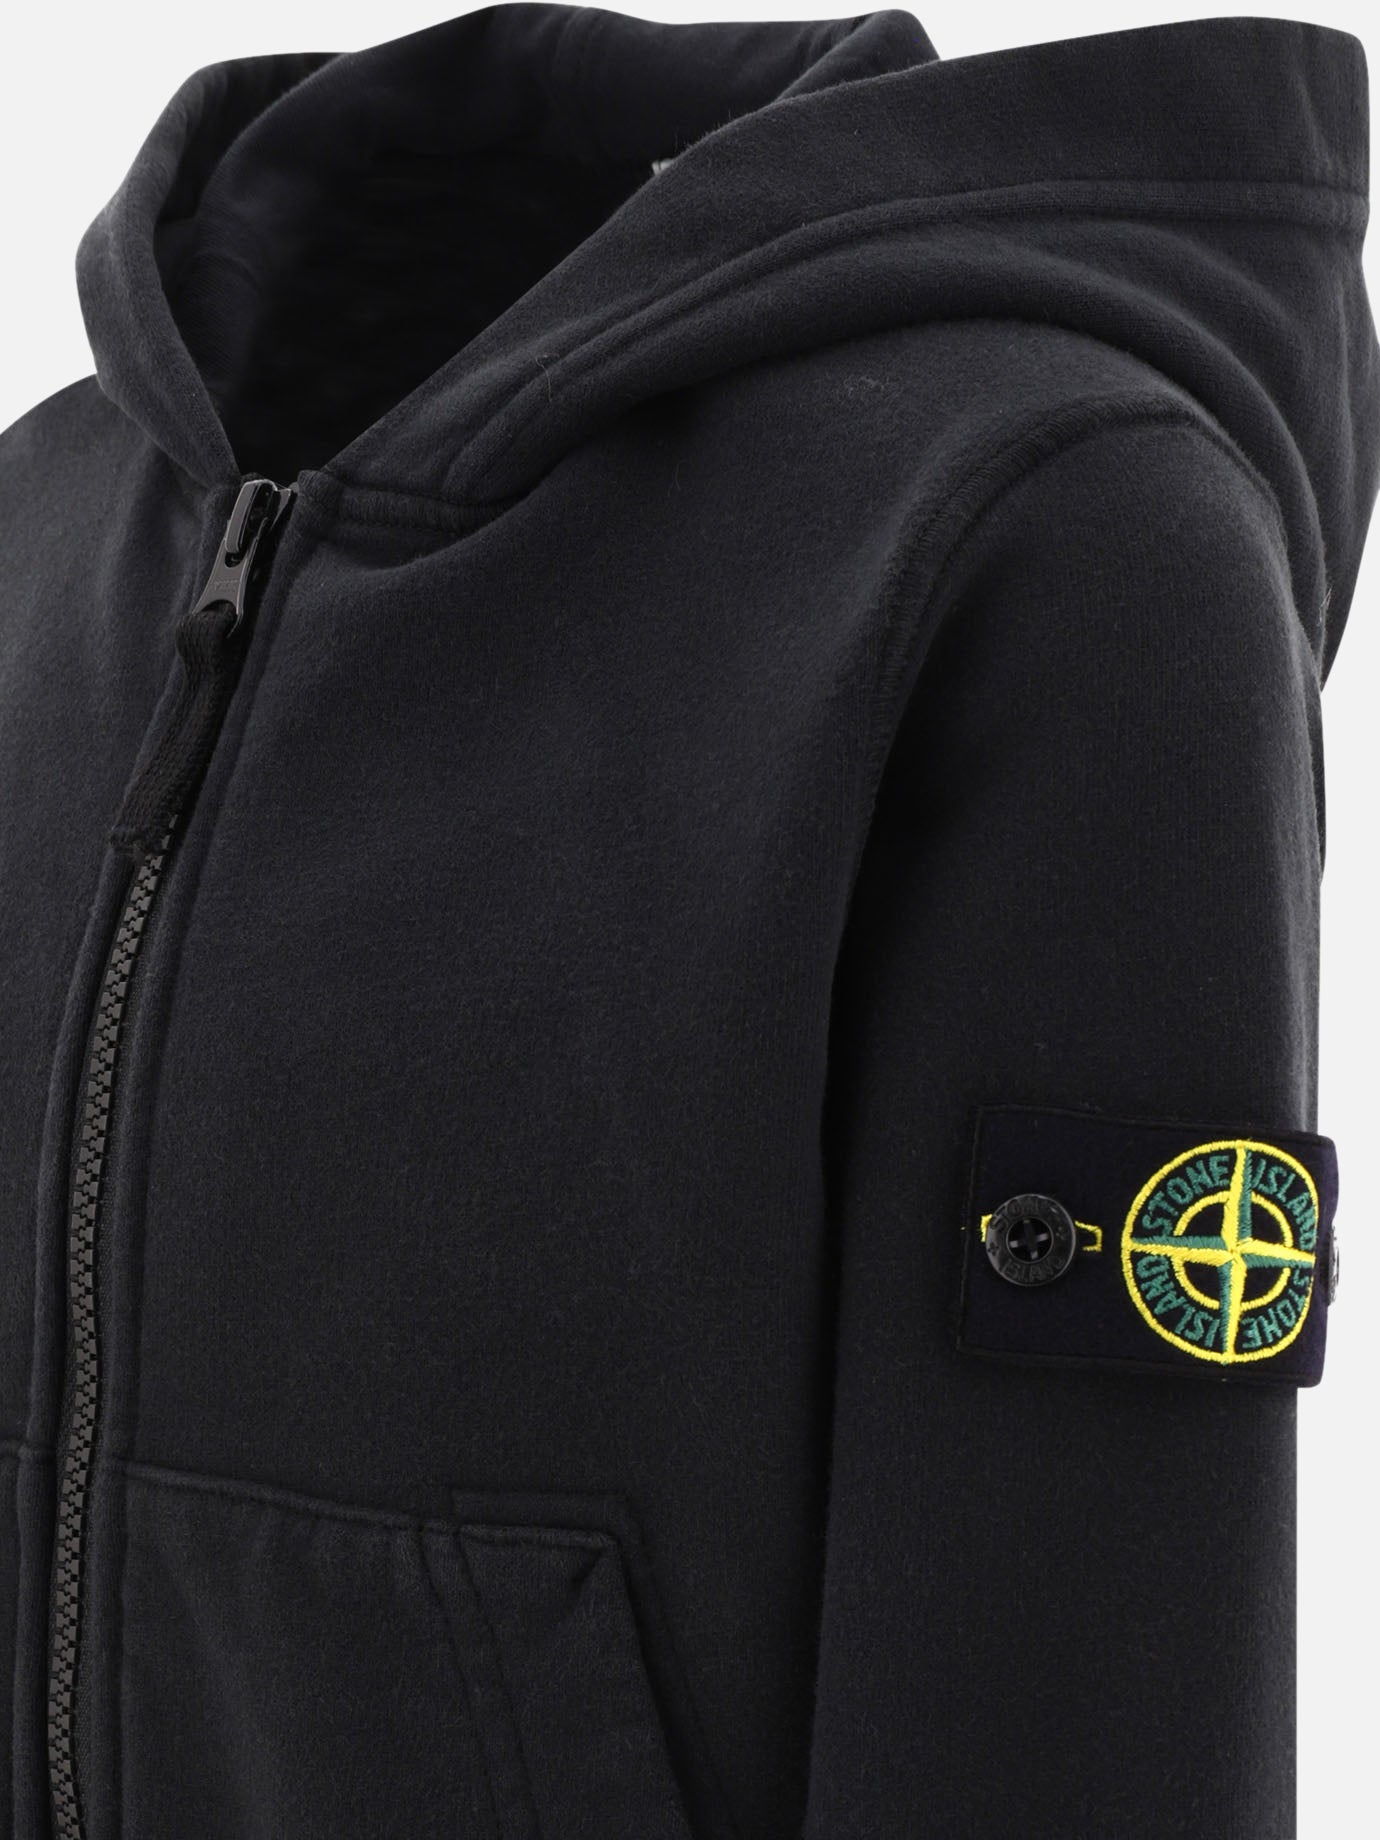 "Compass" hoodie